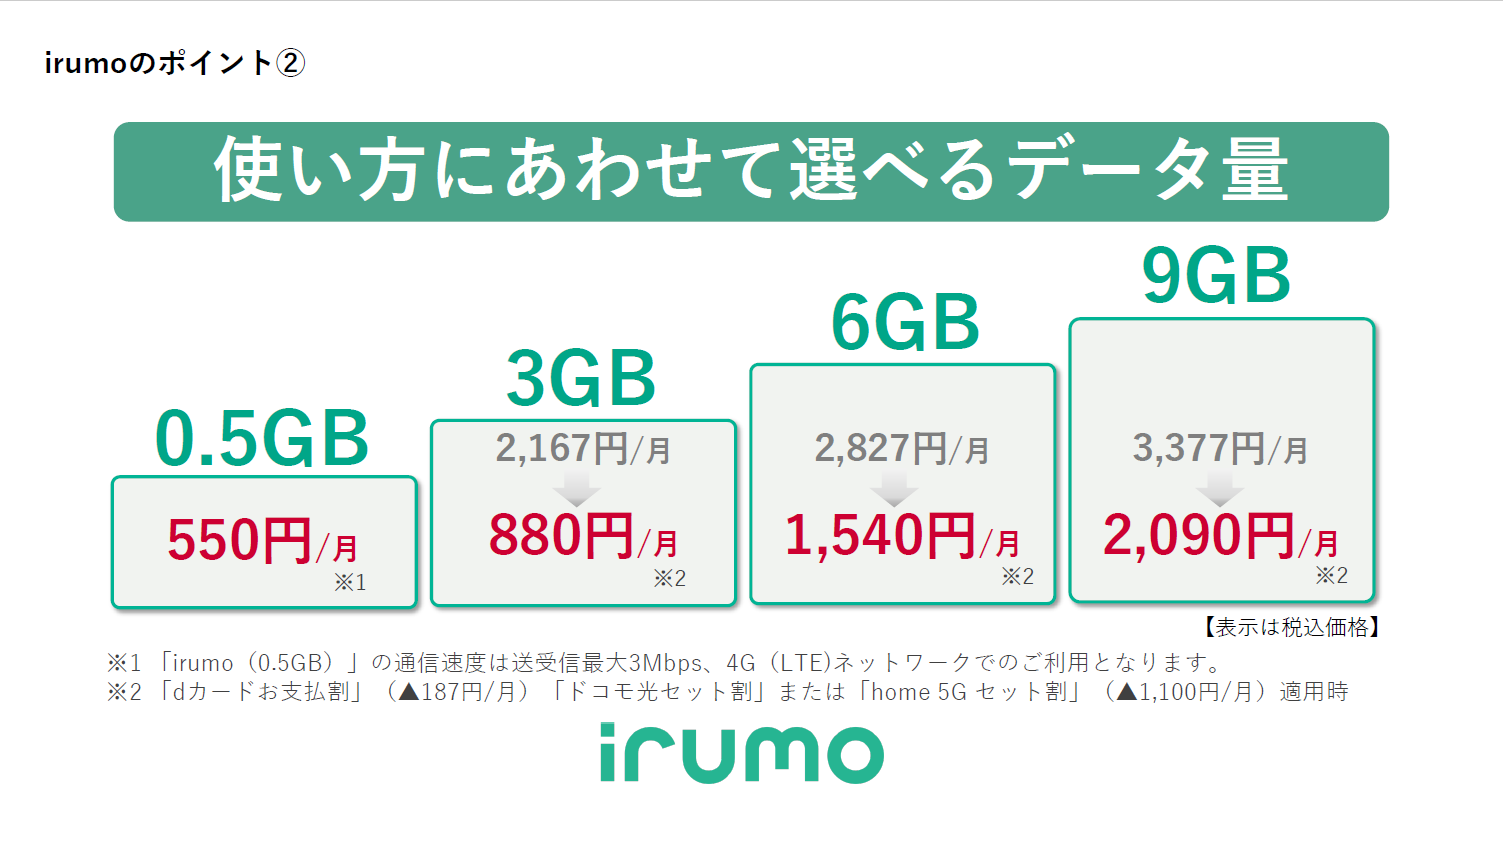 NTTドコモの新料金プラン「irumo」の概要。「OCNモバイルONE」をベースに組み立てられたプランとされているが、店舗によるサポートのあるプランとなったこともあり、月額基本料はOCNモバイルONEの時より大幅な値上げとなっている